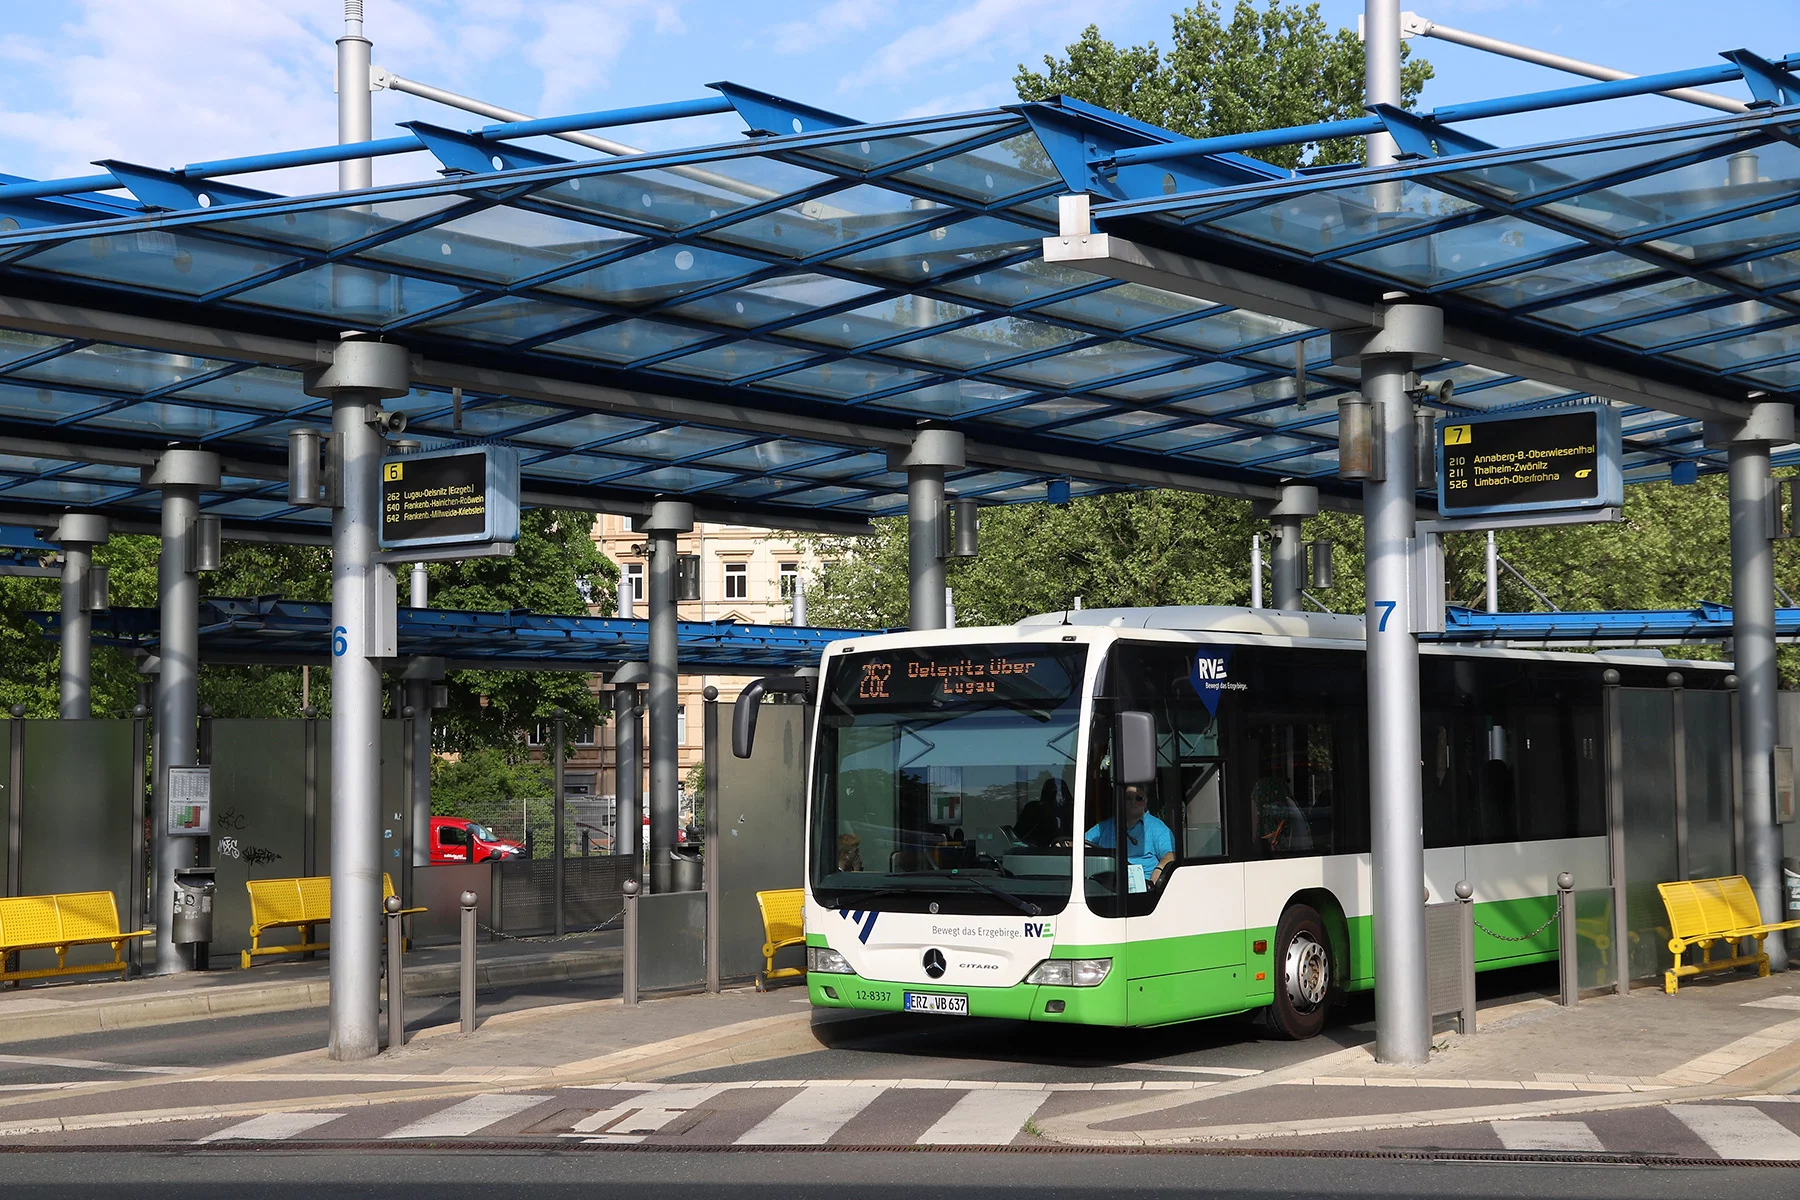 Bus station in Chemnitz